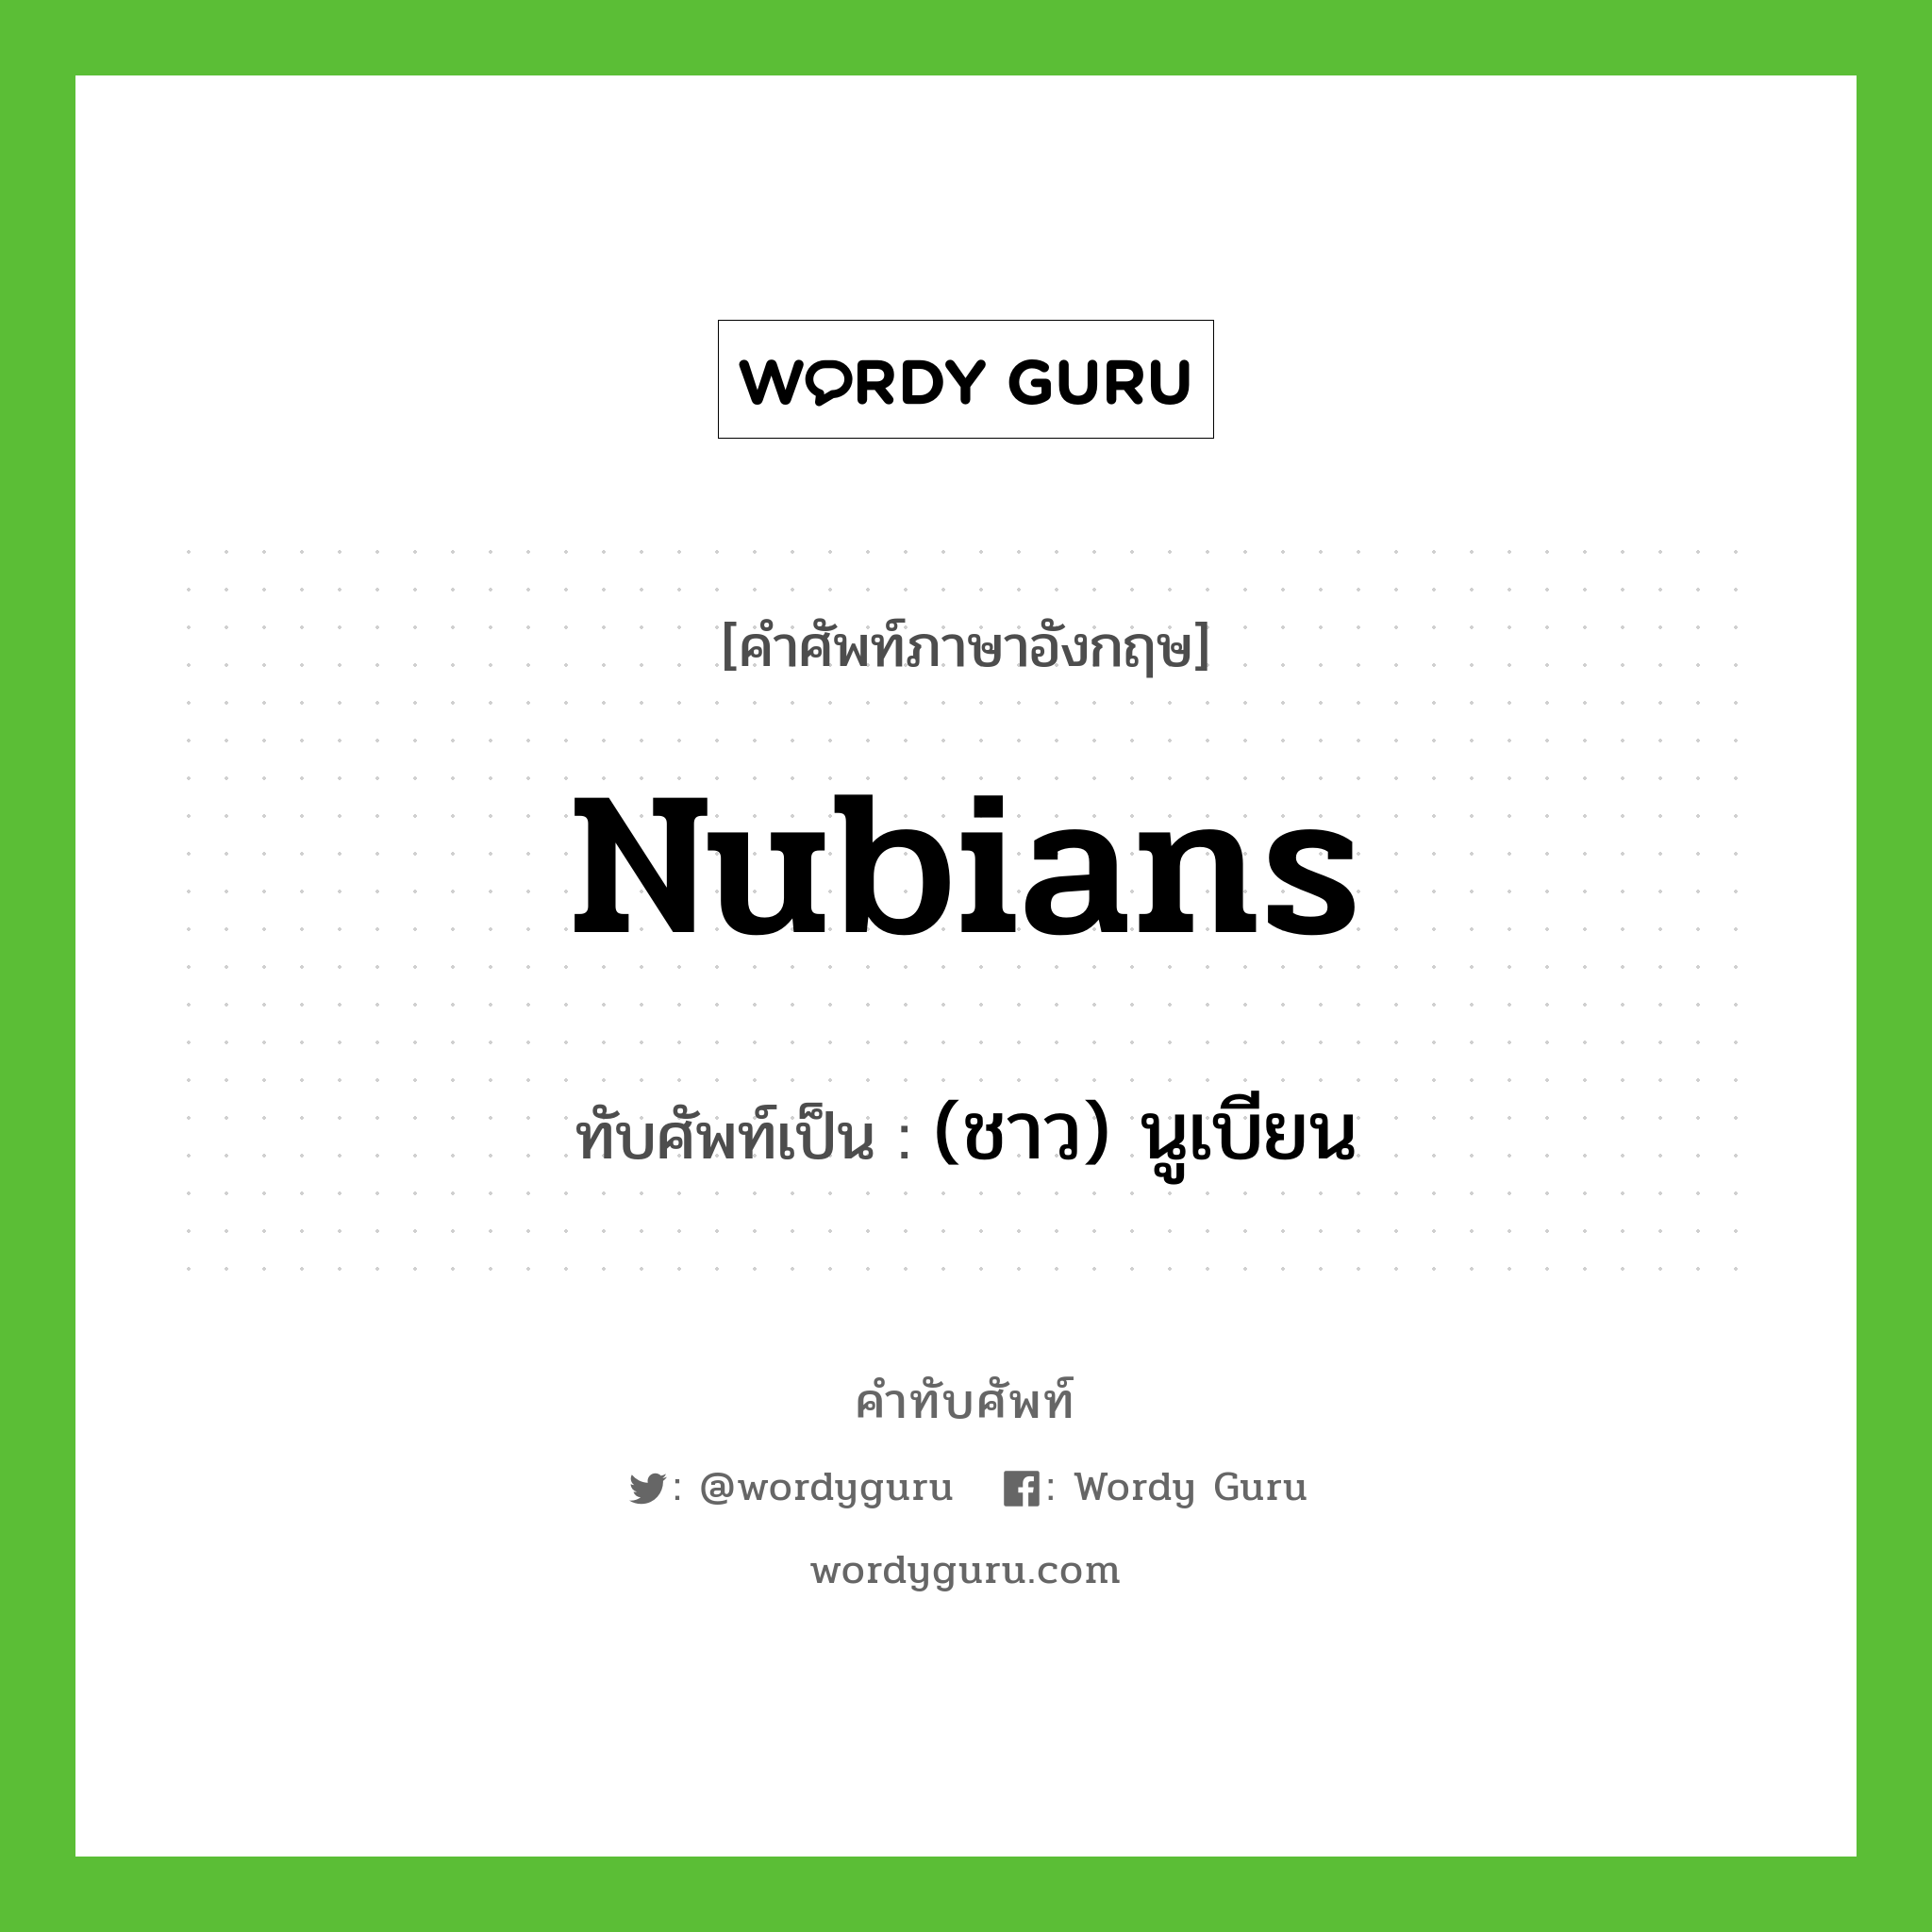 Nubians เขียนเป็นคำไทยว่าอะไร?, คำศัพท์ภาษาอังกฤษ Nubians ทับศัพท์เป็น (ชาว) นูเบียน